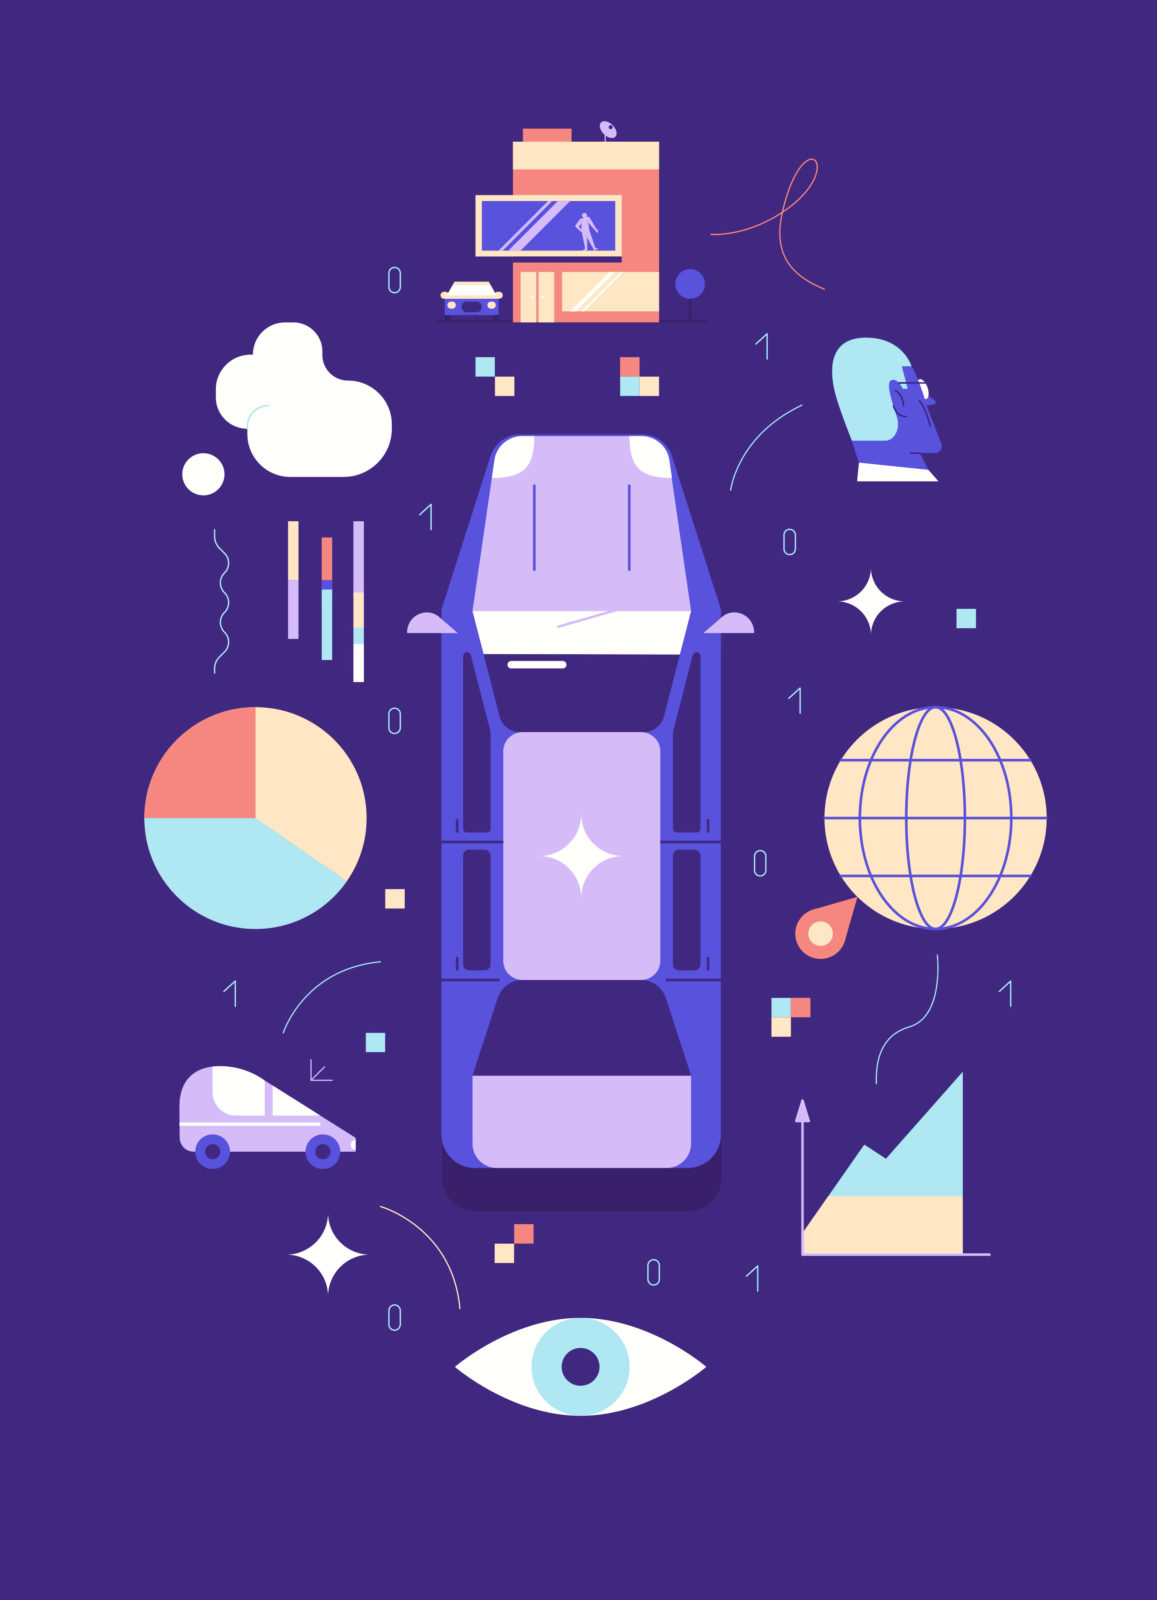 Иллюстрация на тему работы Microsoft в автомобильной индустрии - машина, а вокруг графики и облака